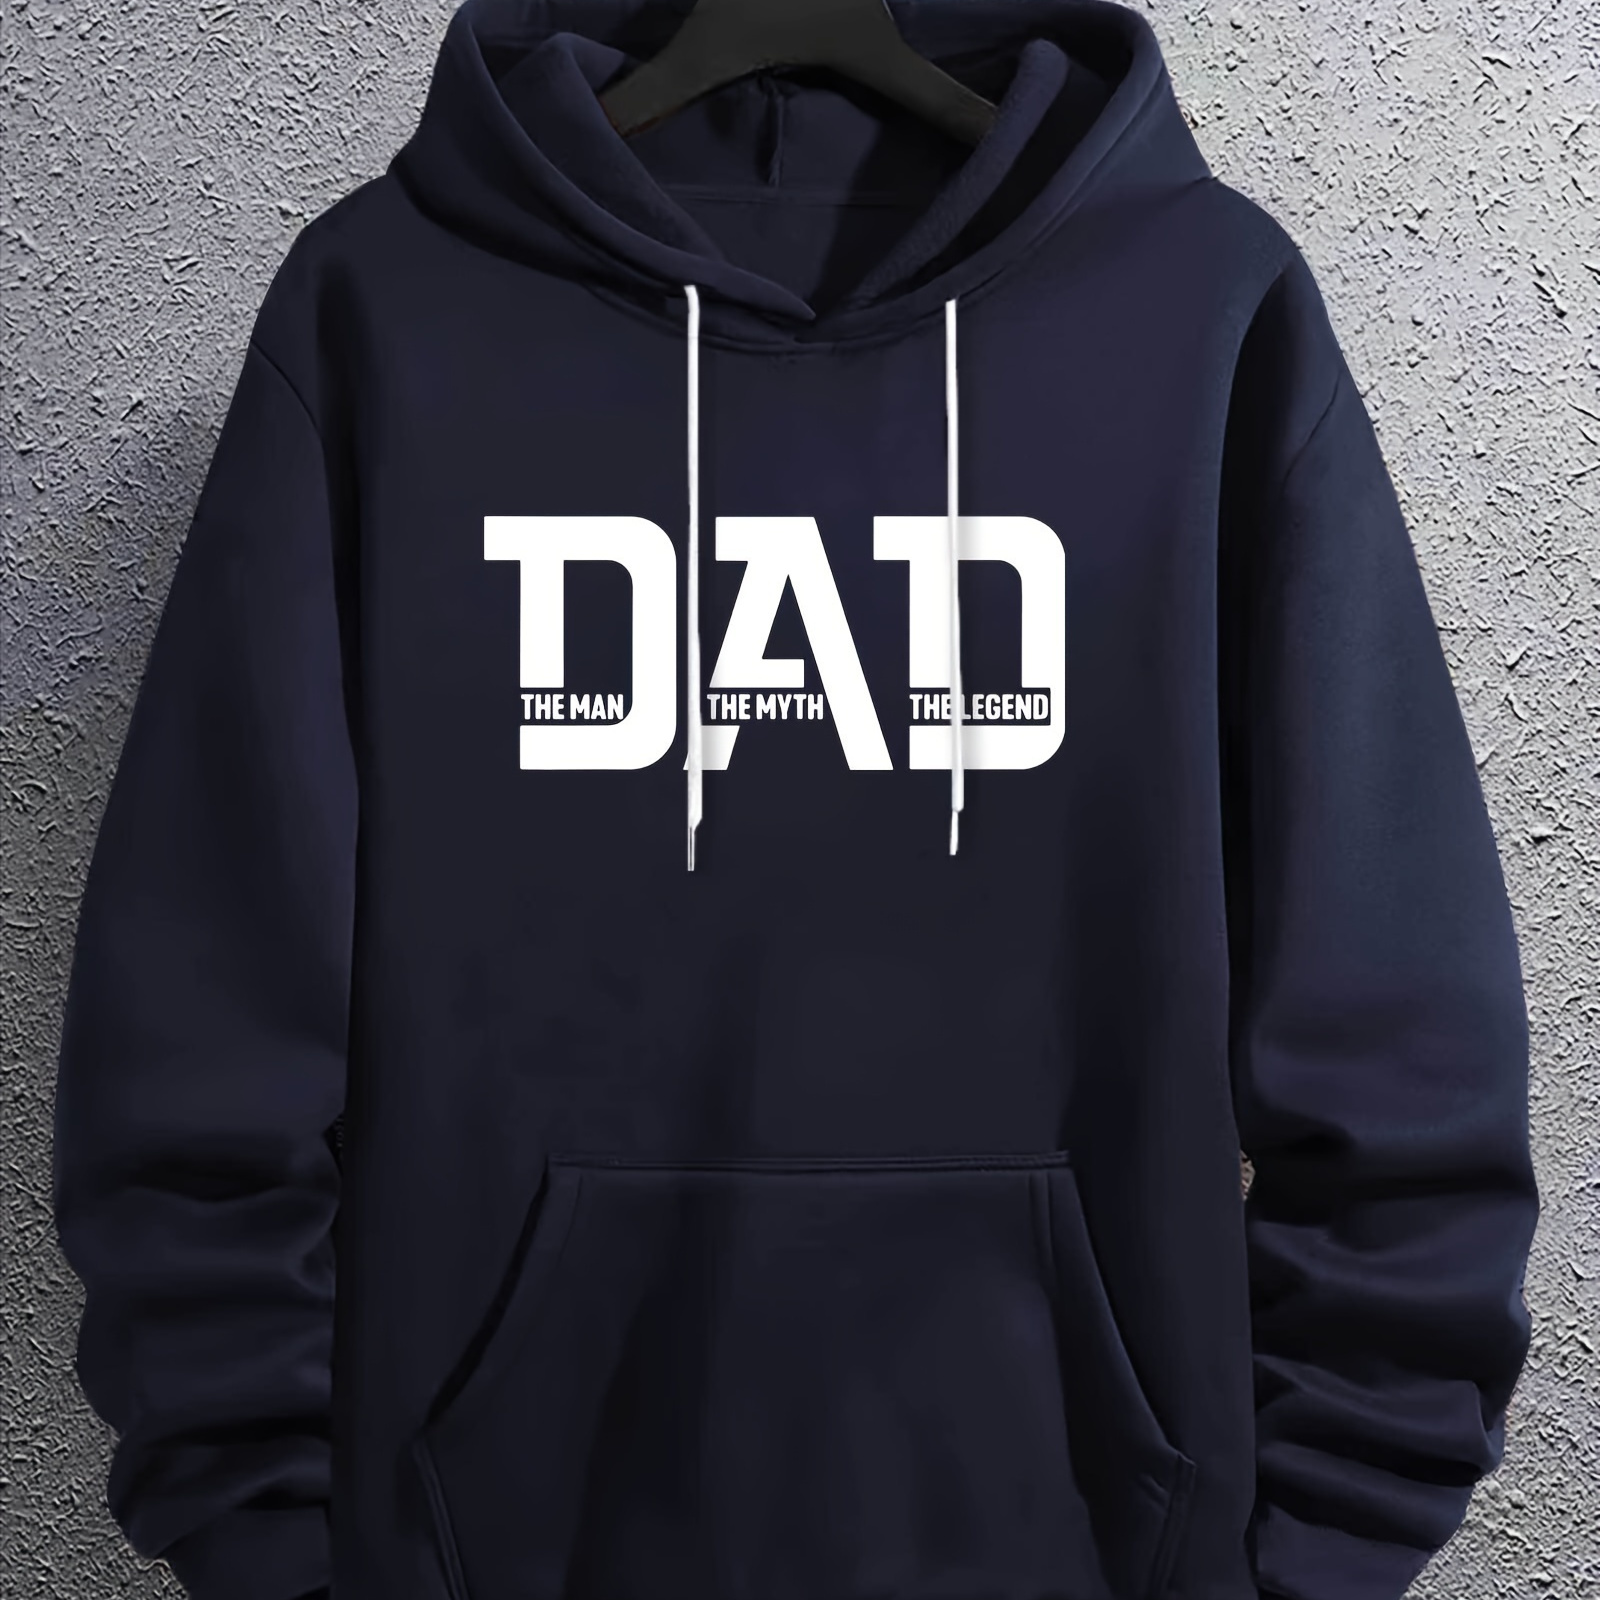 

Dad Print Kangaroo Pocket Hoodie, Casual Long Sleeve Hoodies Pullover Sweatshirt, Men's Clothing, For Fall Winter